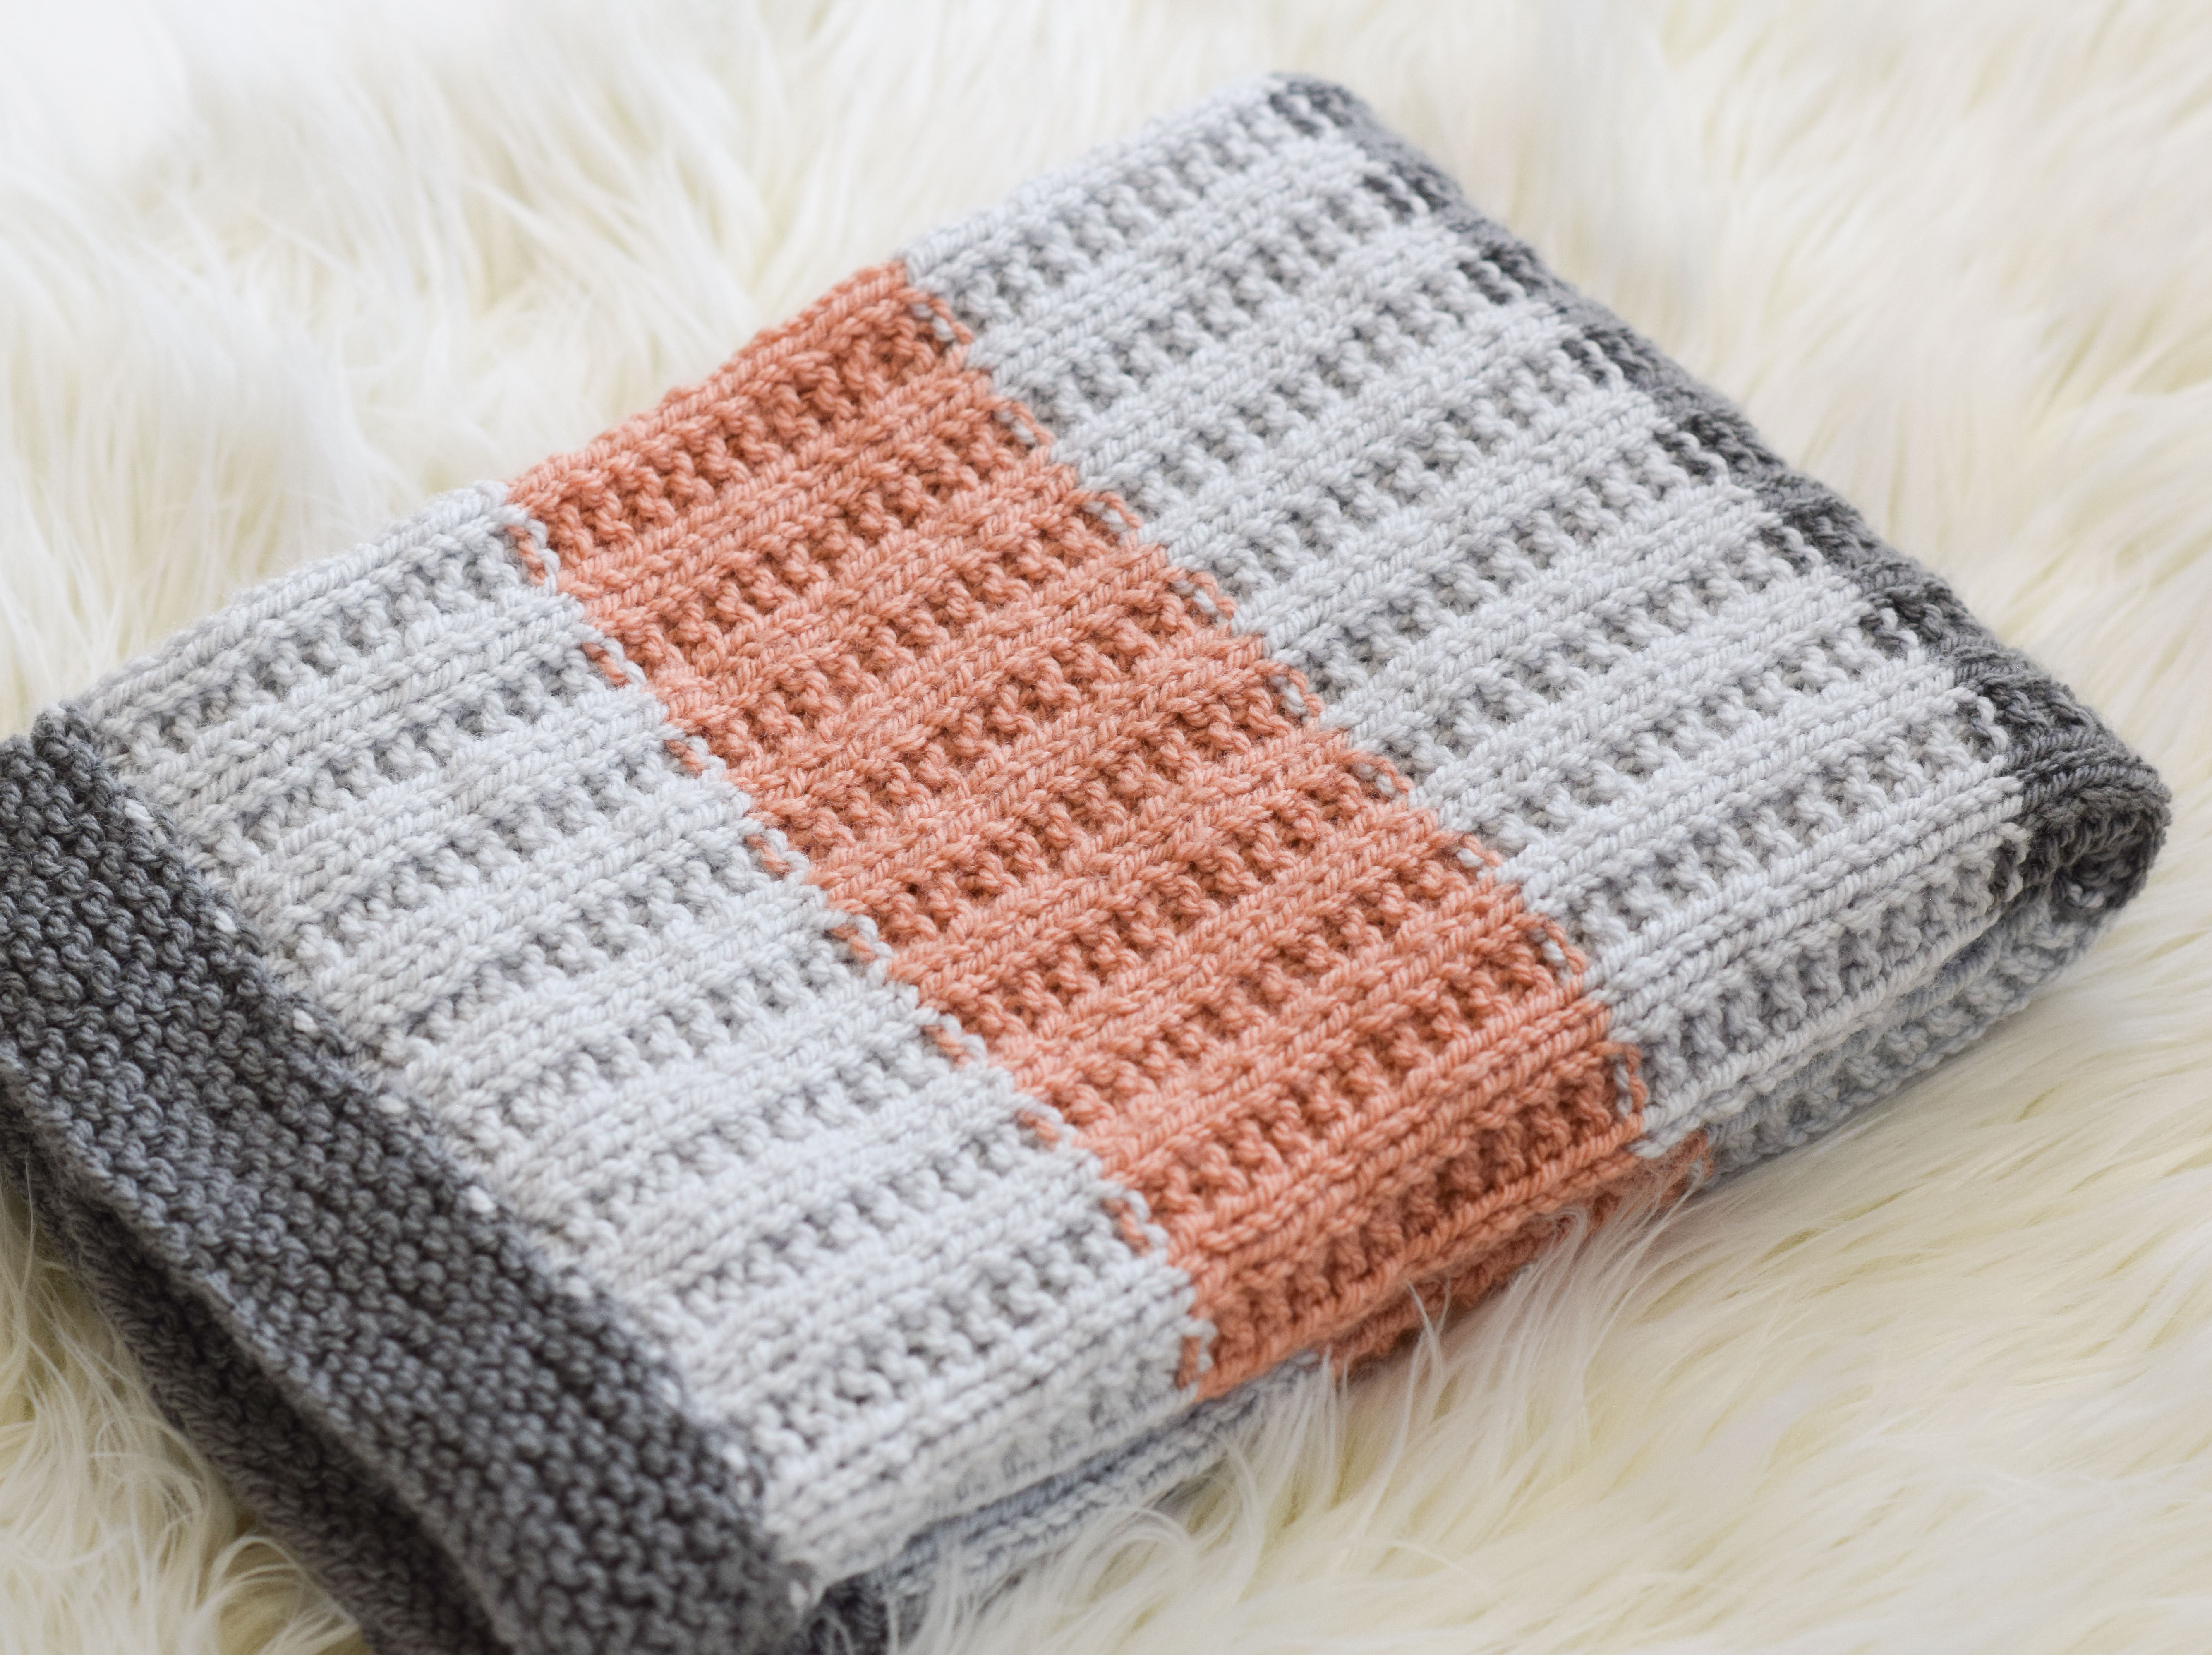 Baby blanket patterns knitting free